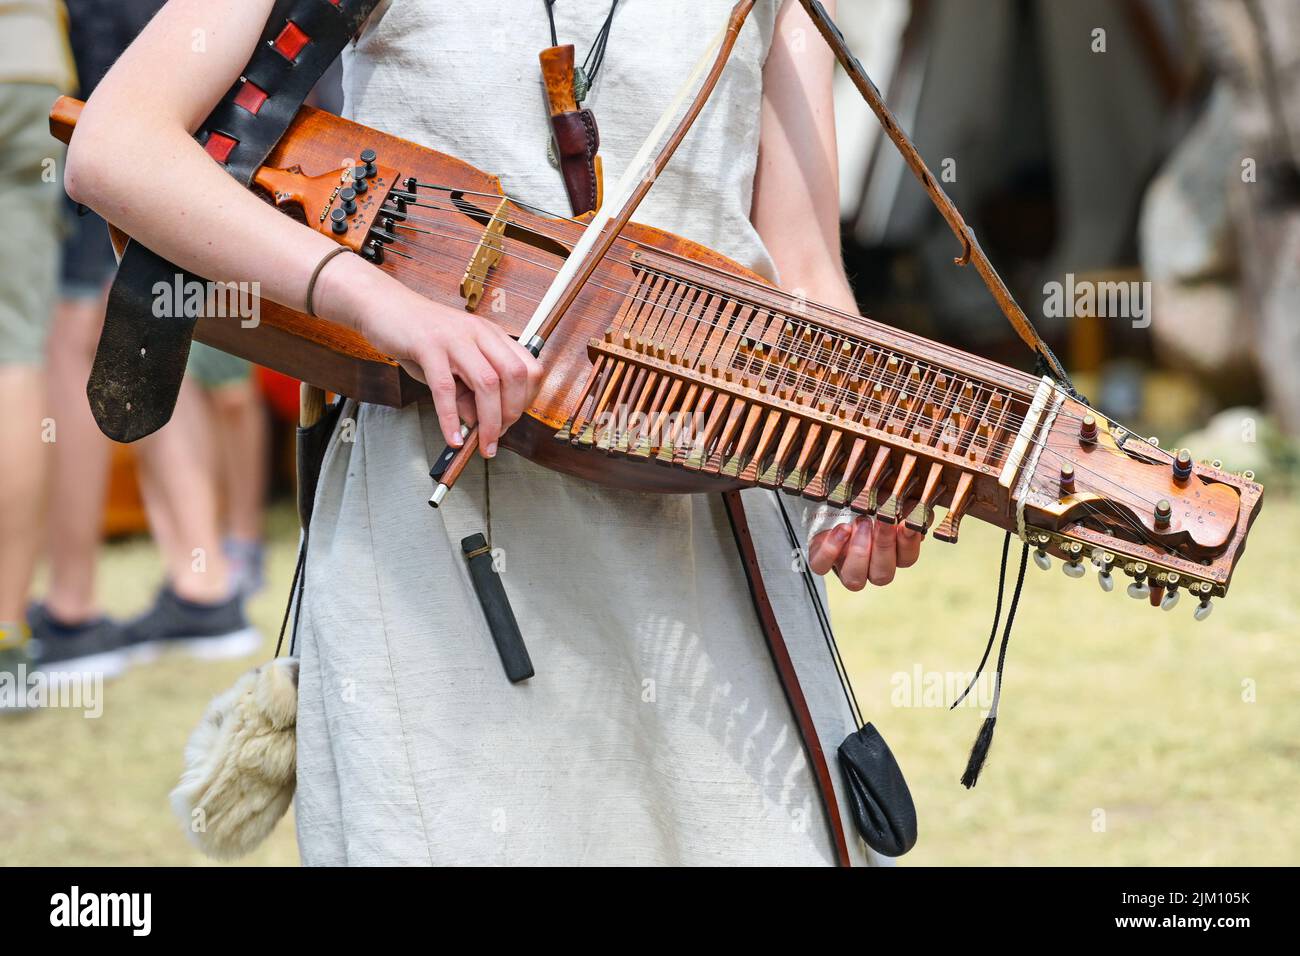 Nyckelharpa, violon à clé, instrument de musique suédois traditionnel, instrument à cordes ou chordophone joué par une jeune femme lors d'un festival médiéval, Banque D'Images